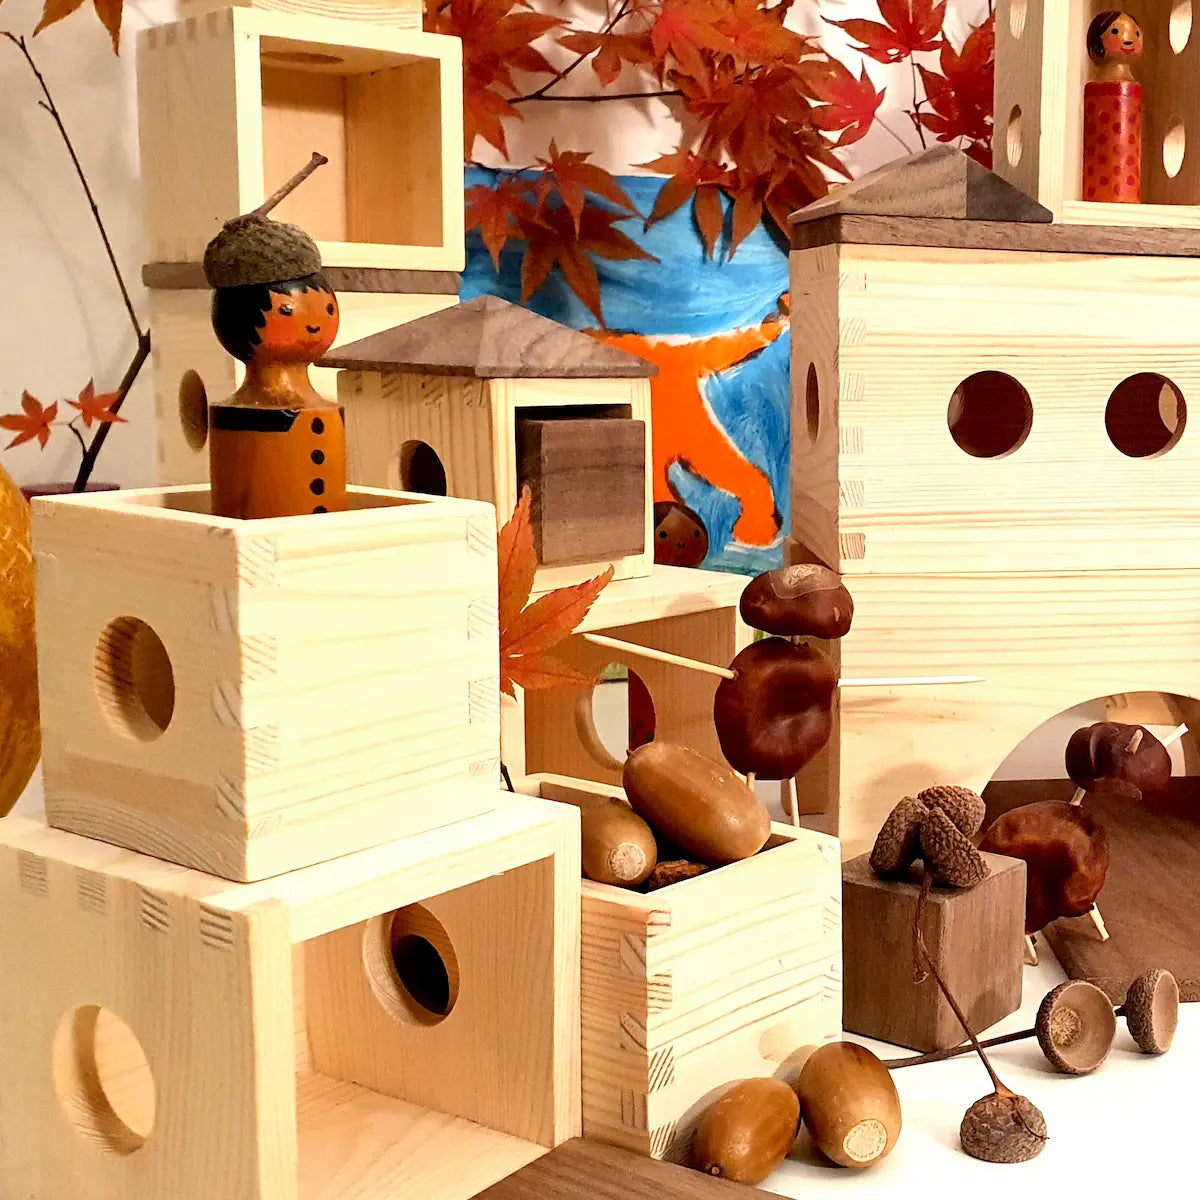 Nahaufnahme einer herbstliche Szene mit Matzbox-Bausteinen. In einer Kiste liegen Eicheln. In einer Box steht eine Figur eine Kastanientier läuft durch ein Tor